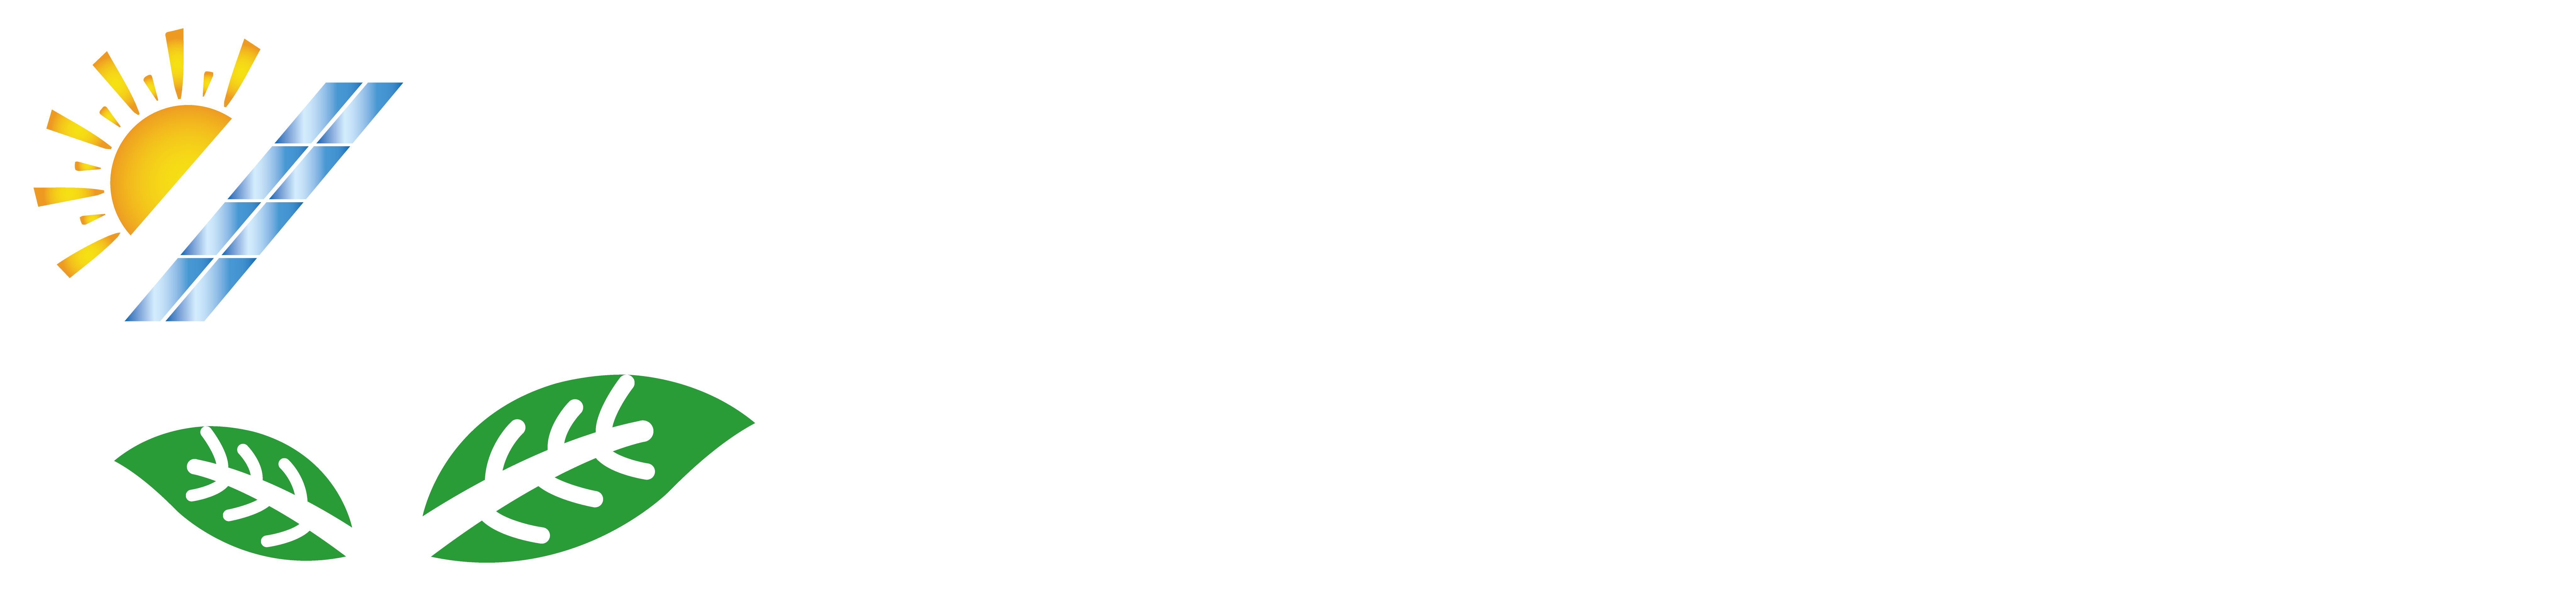 H.E.C. Bau GmbH | Ihr Anbieter für Photovoltaik & Solar